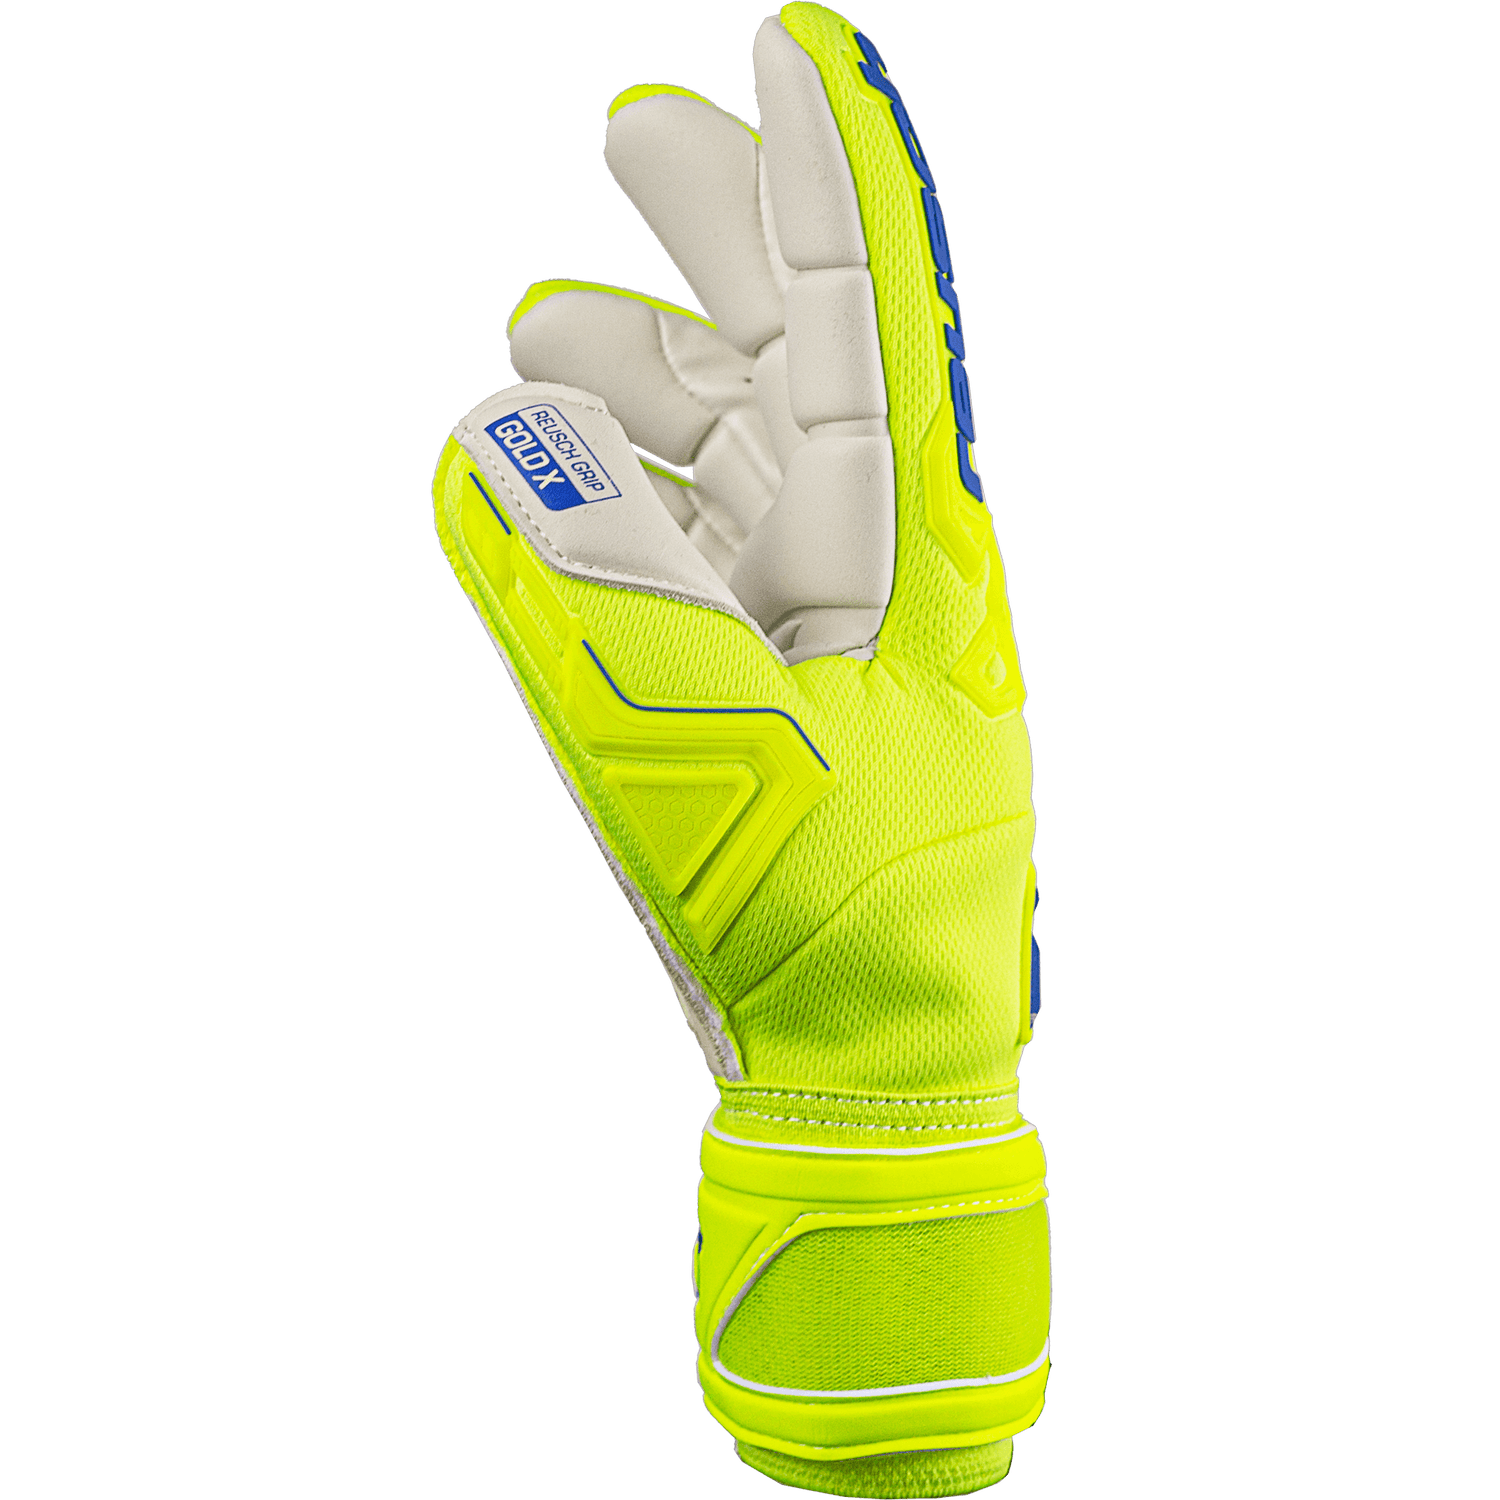 Reusch Attrakt Freegel Gold X Finger Support Goalkeeper Gloves - Yellow-Blue-White (Single - Side)